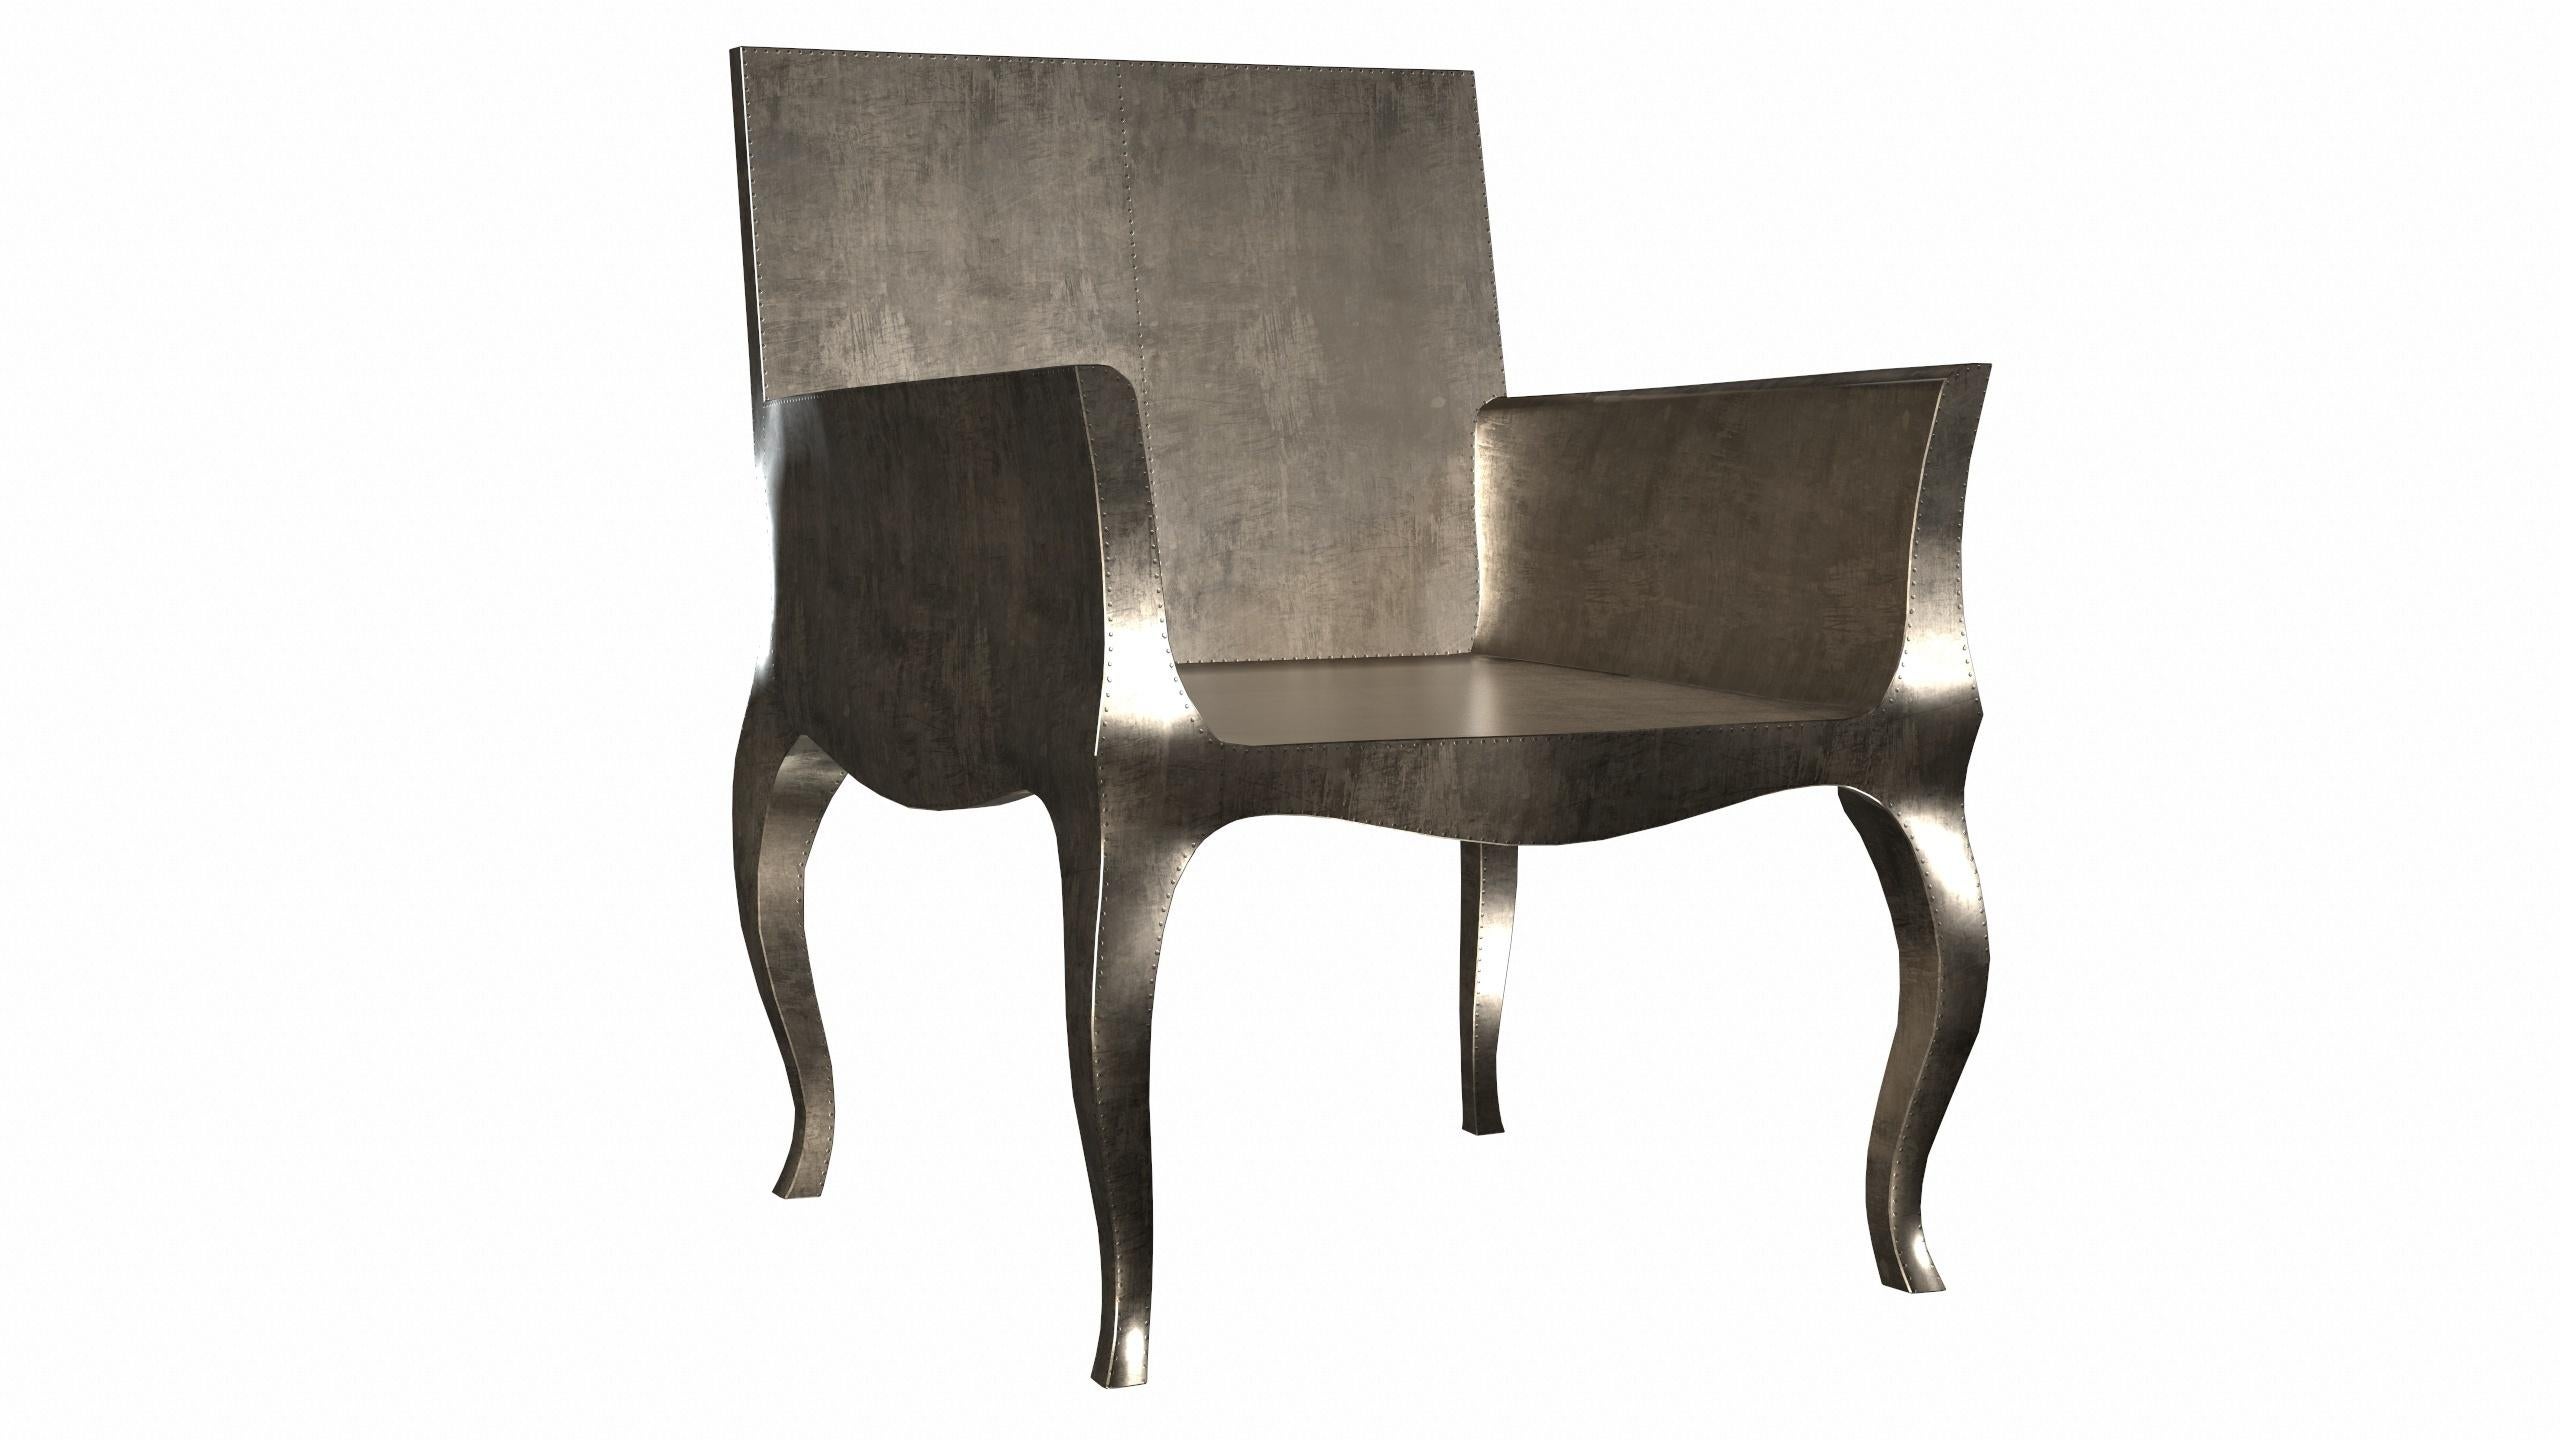 Wir stellen die Art Deco Chairs vor, eine atemberaubende  Art-Déco-Stühle, entworfen von dem berühmten Paul Mathieu für Stephanie Odegard. Dieses elegante Art-Déco-Stuhl-Duo besticht durch sein einzigartiges, geschwungenes Profil, das einen